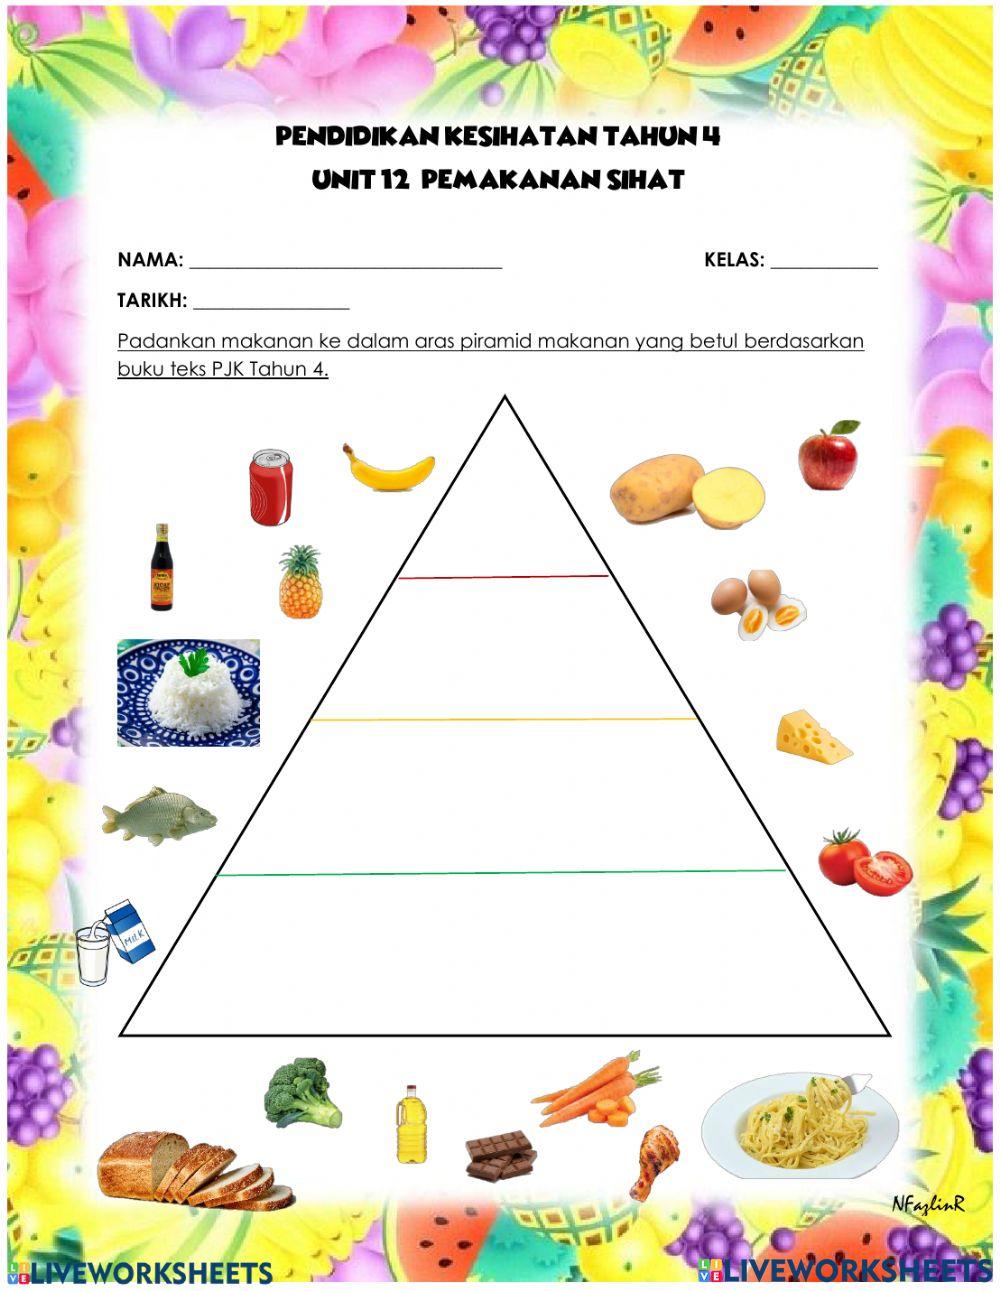 Pemakanan sihat (piramid makanan)